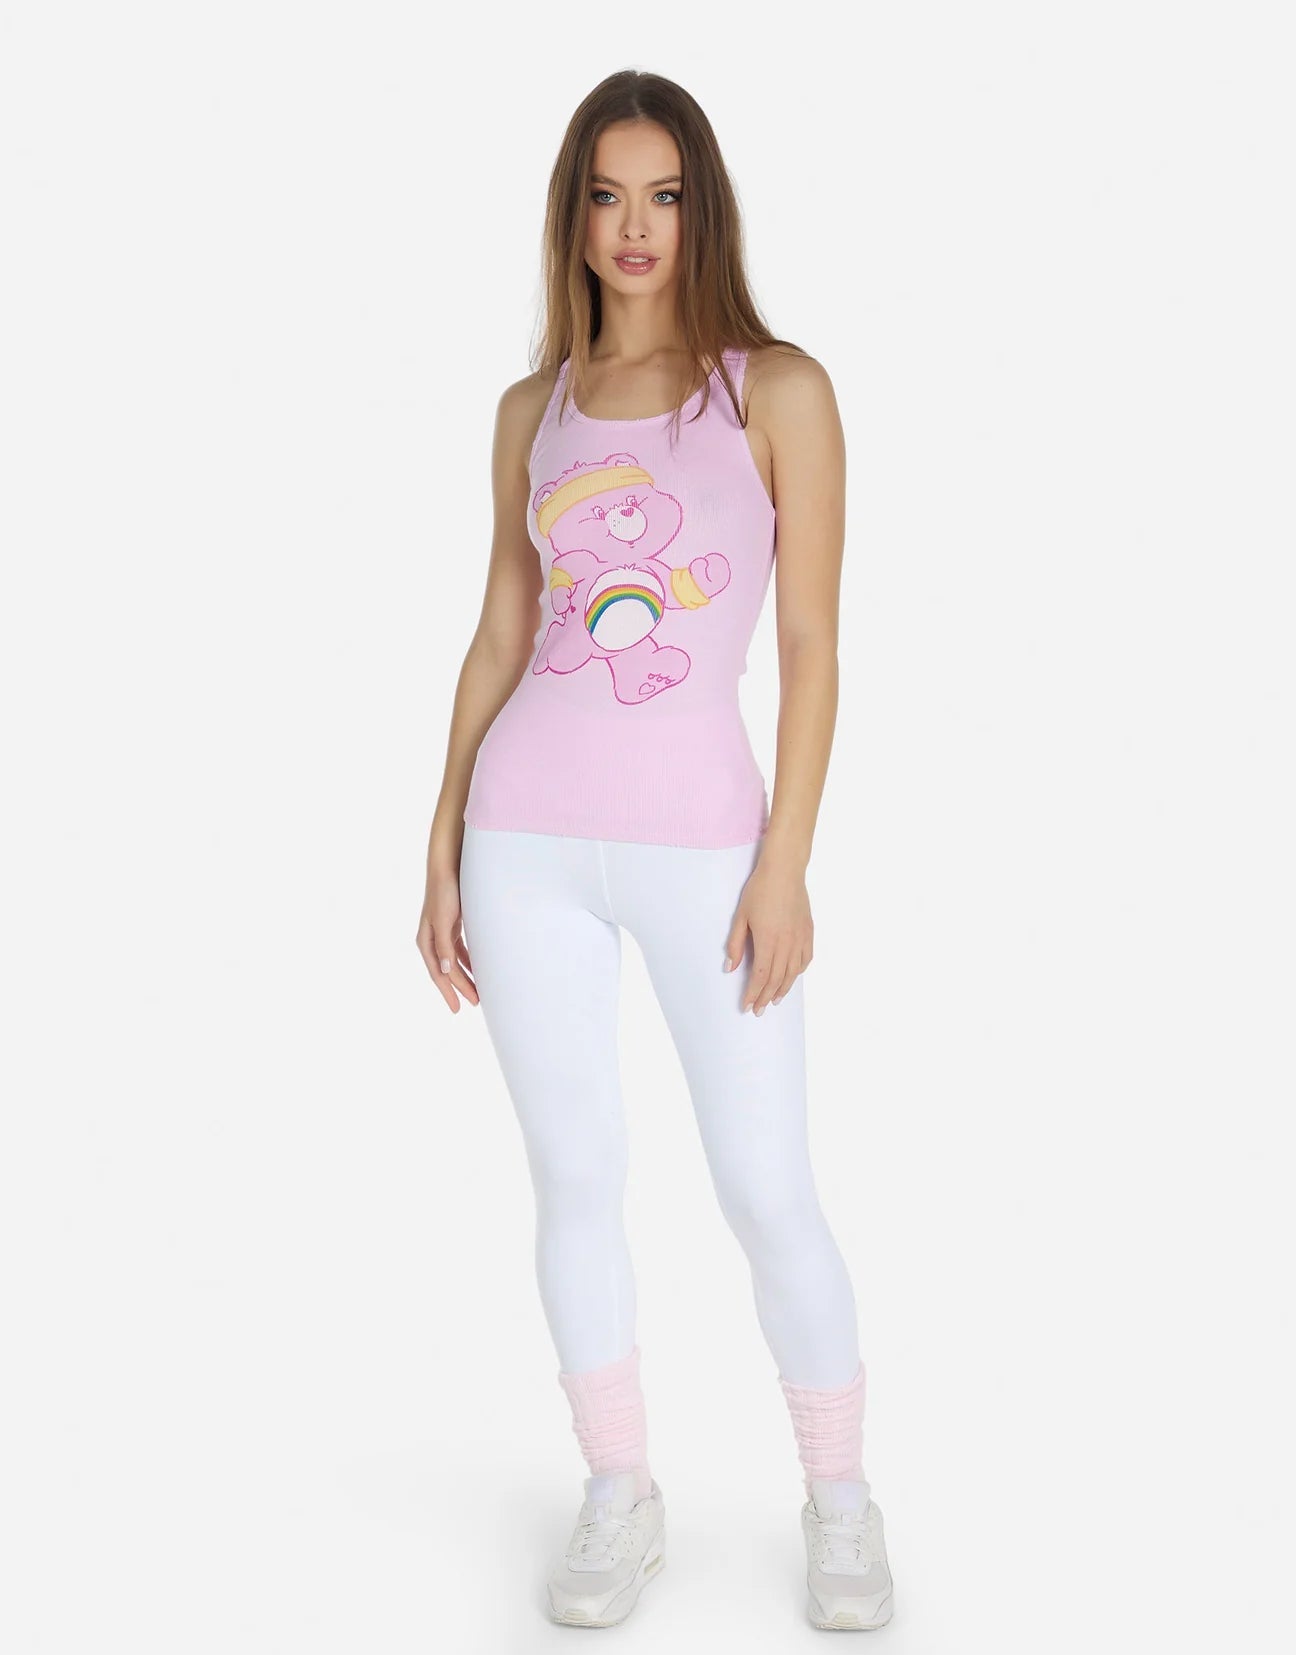 Shop Lauren Moshi Esmerelda Care Bears Tank Top - Premium T-Shirt from Lauren Moshi Online now at Spoiled Brat 